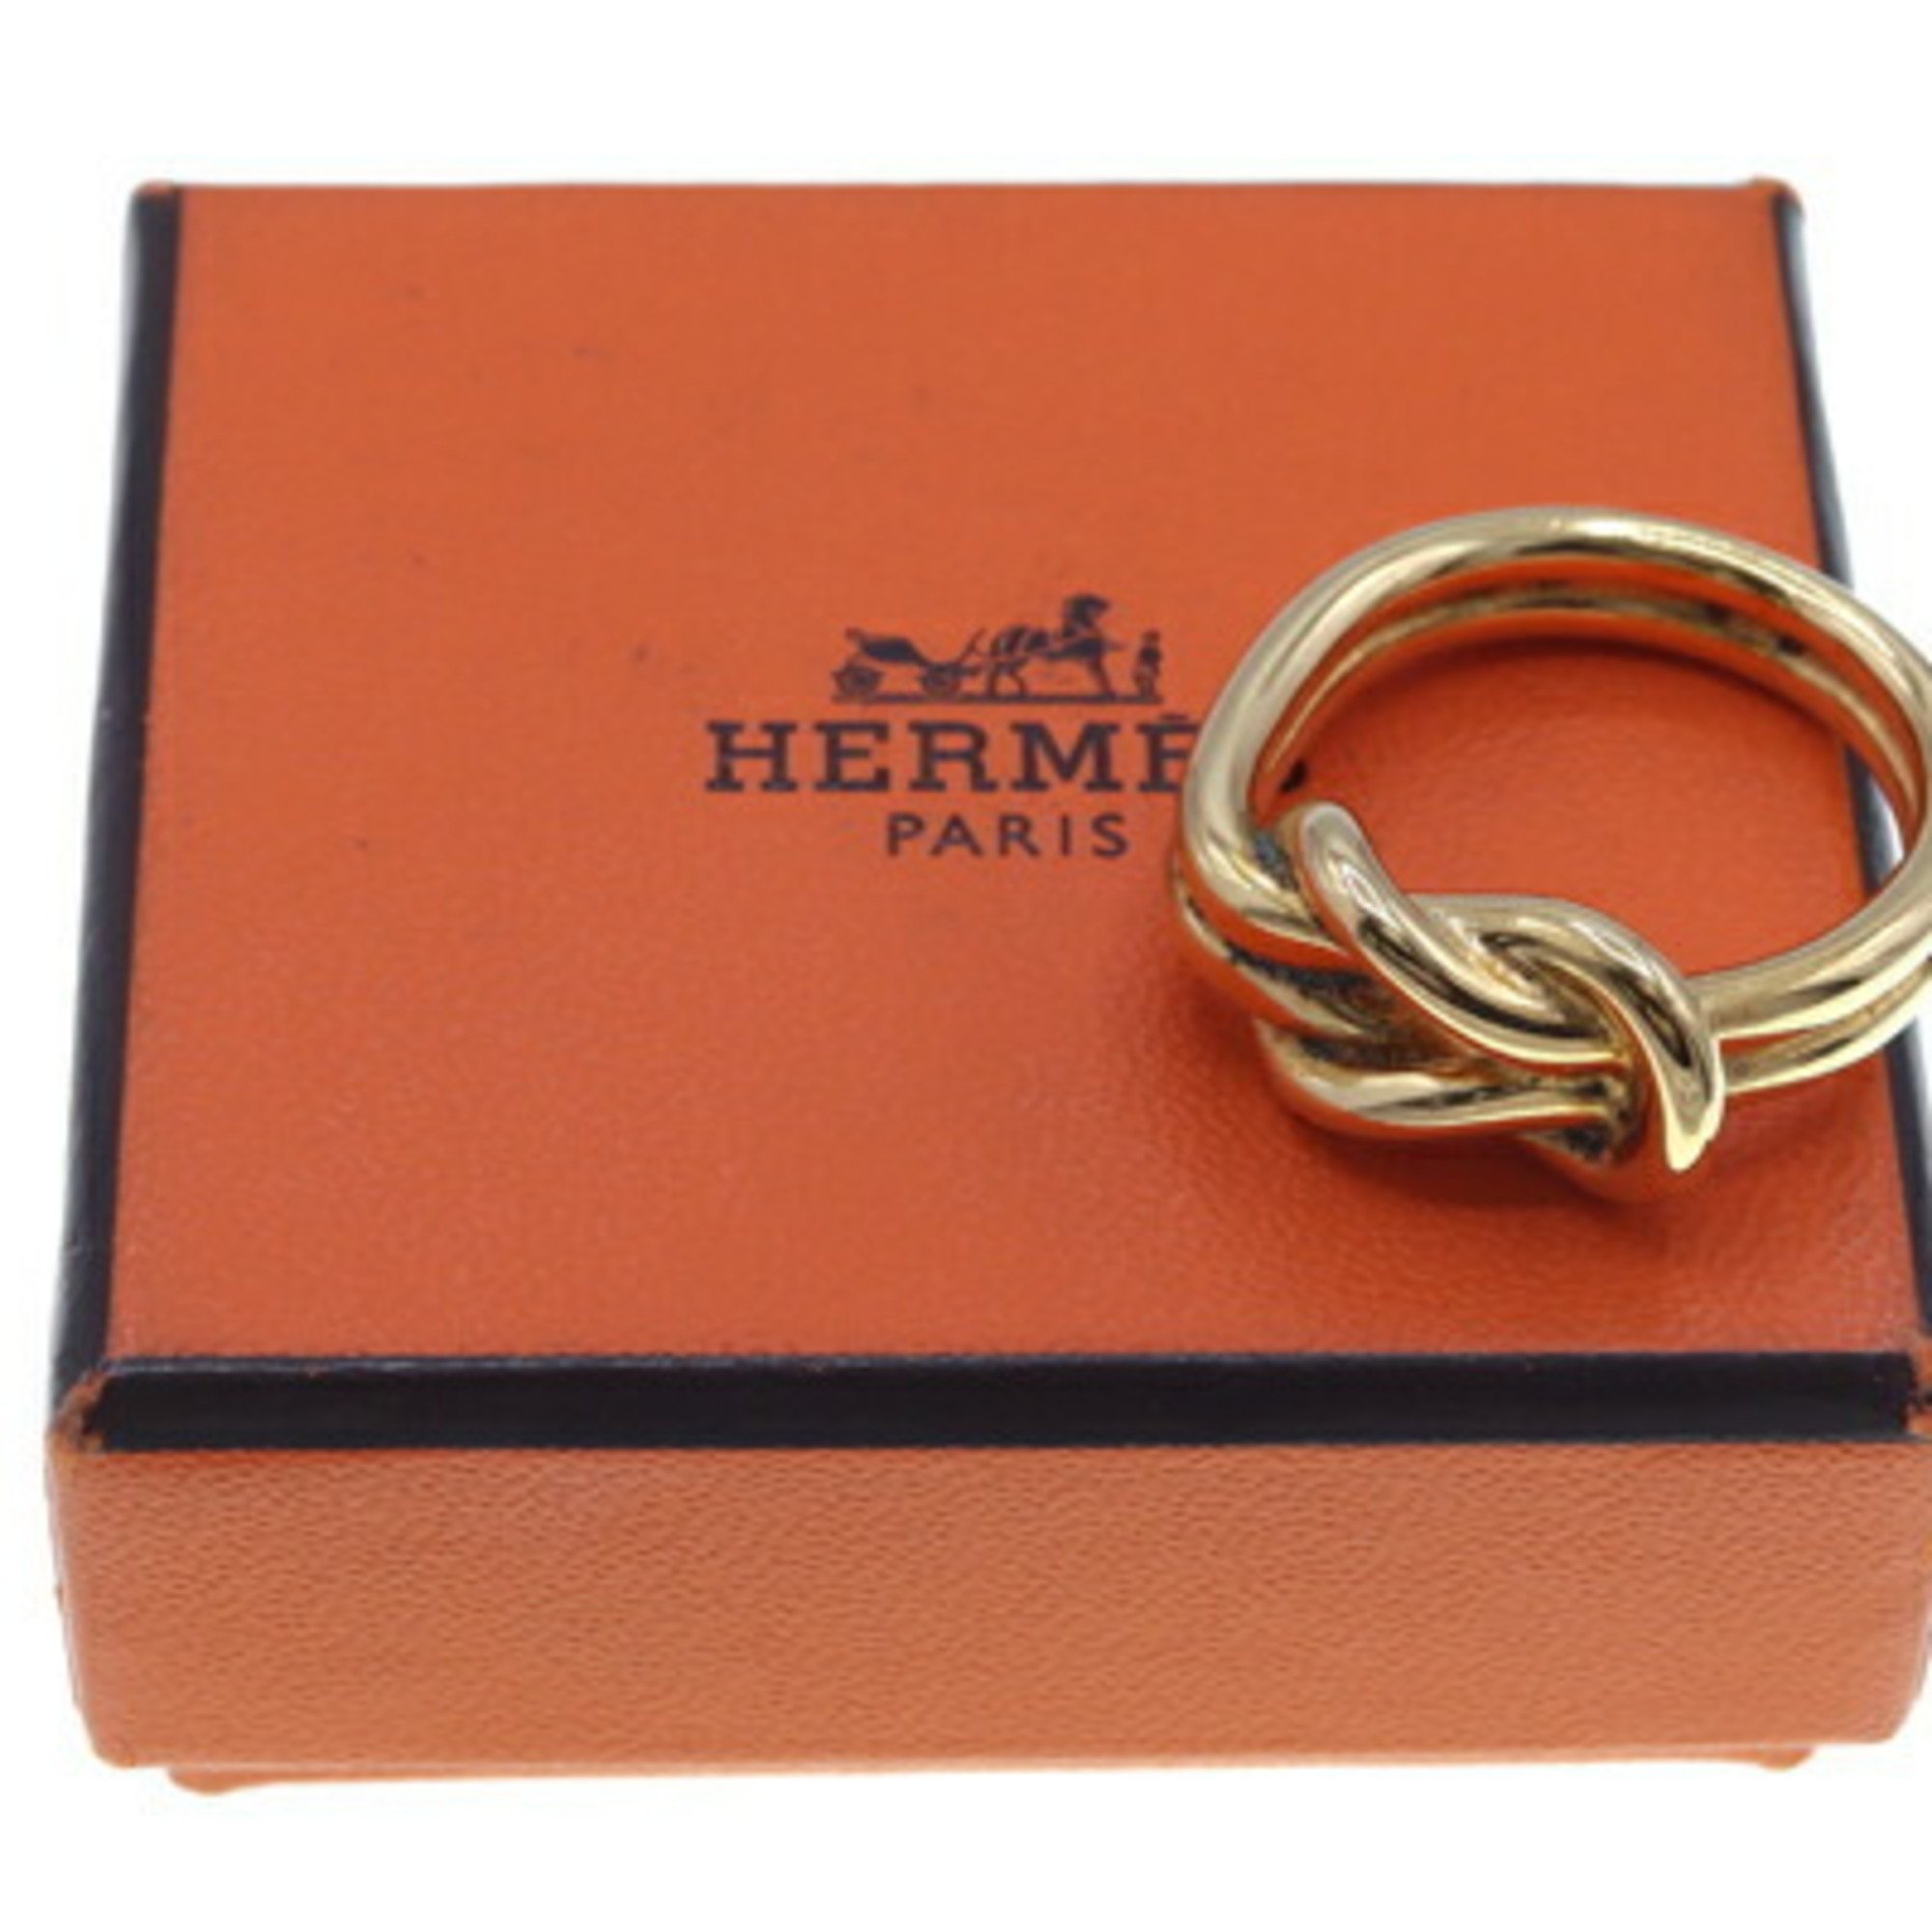 Hermes scarf muffler ring atame gold metal ladies stole HERMES